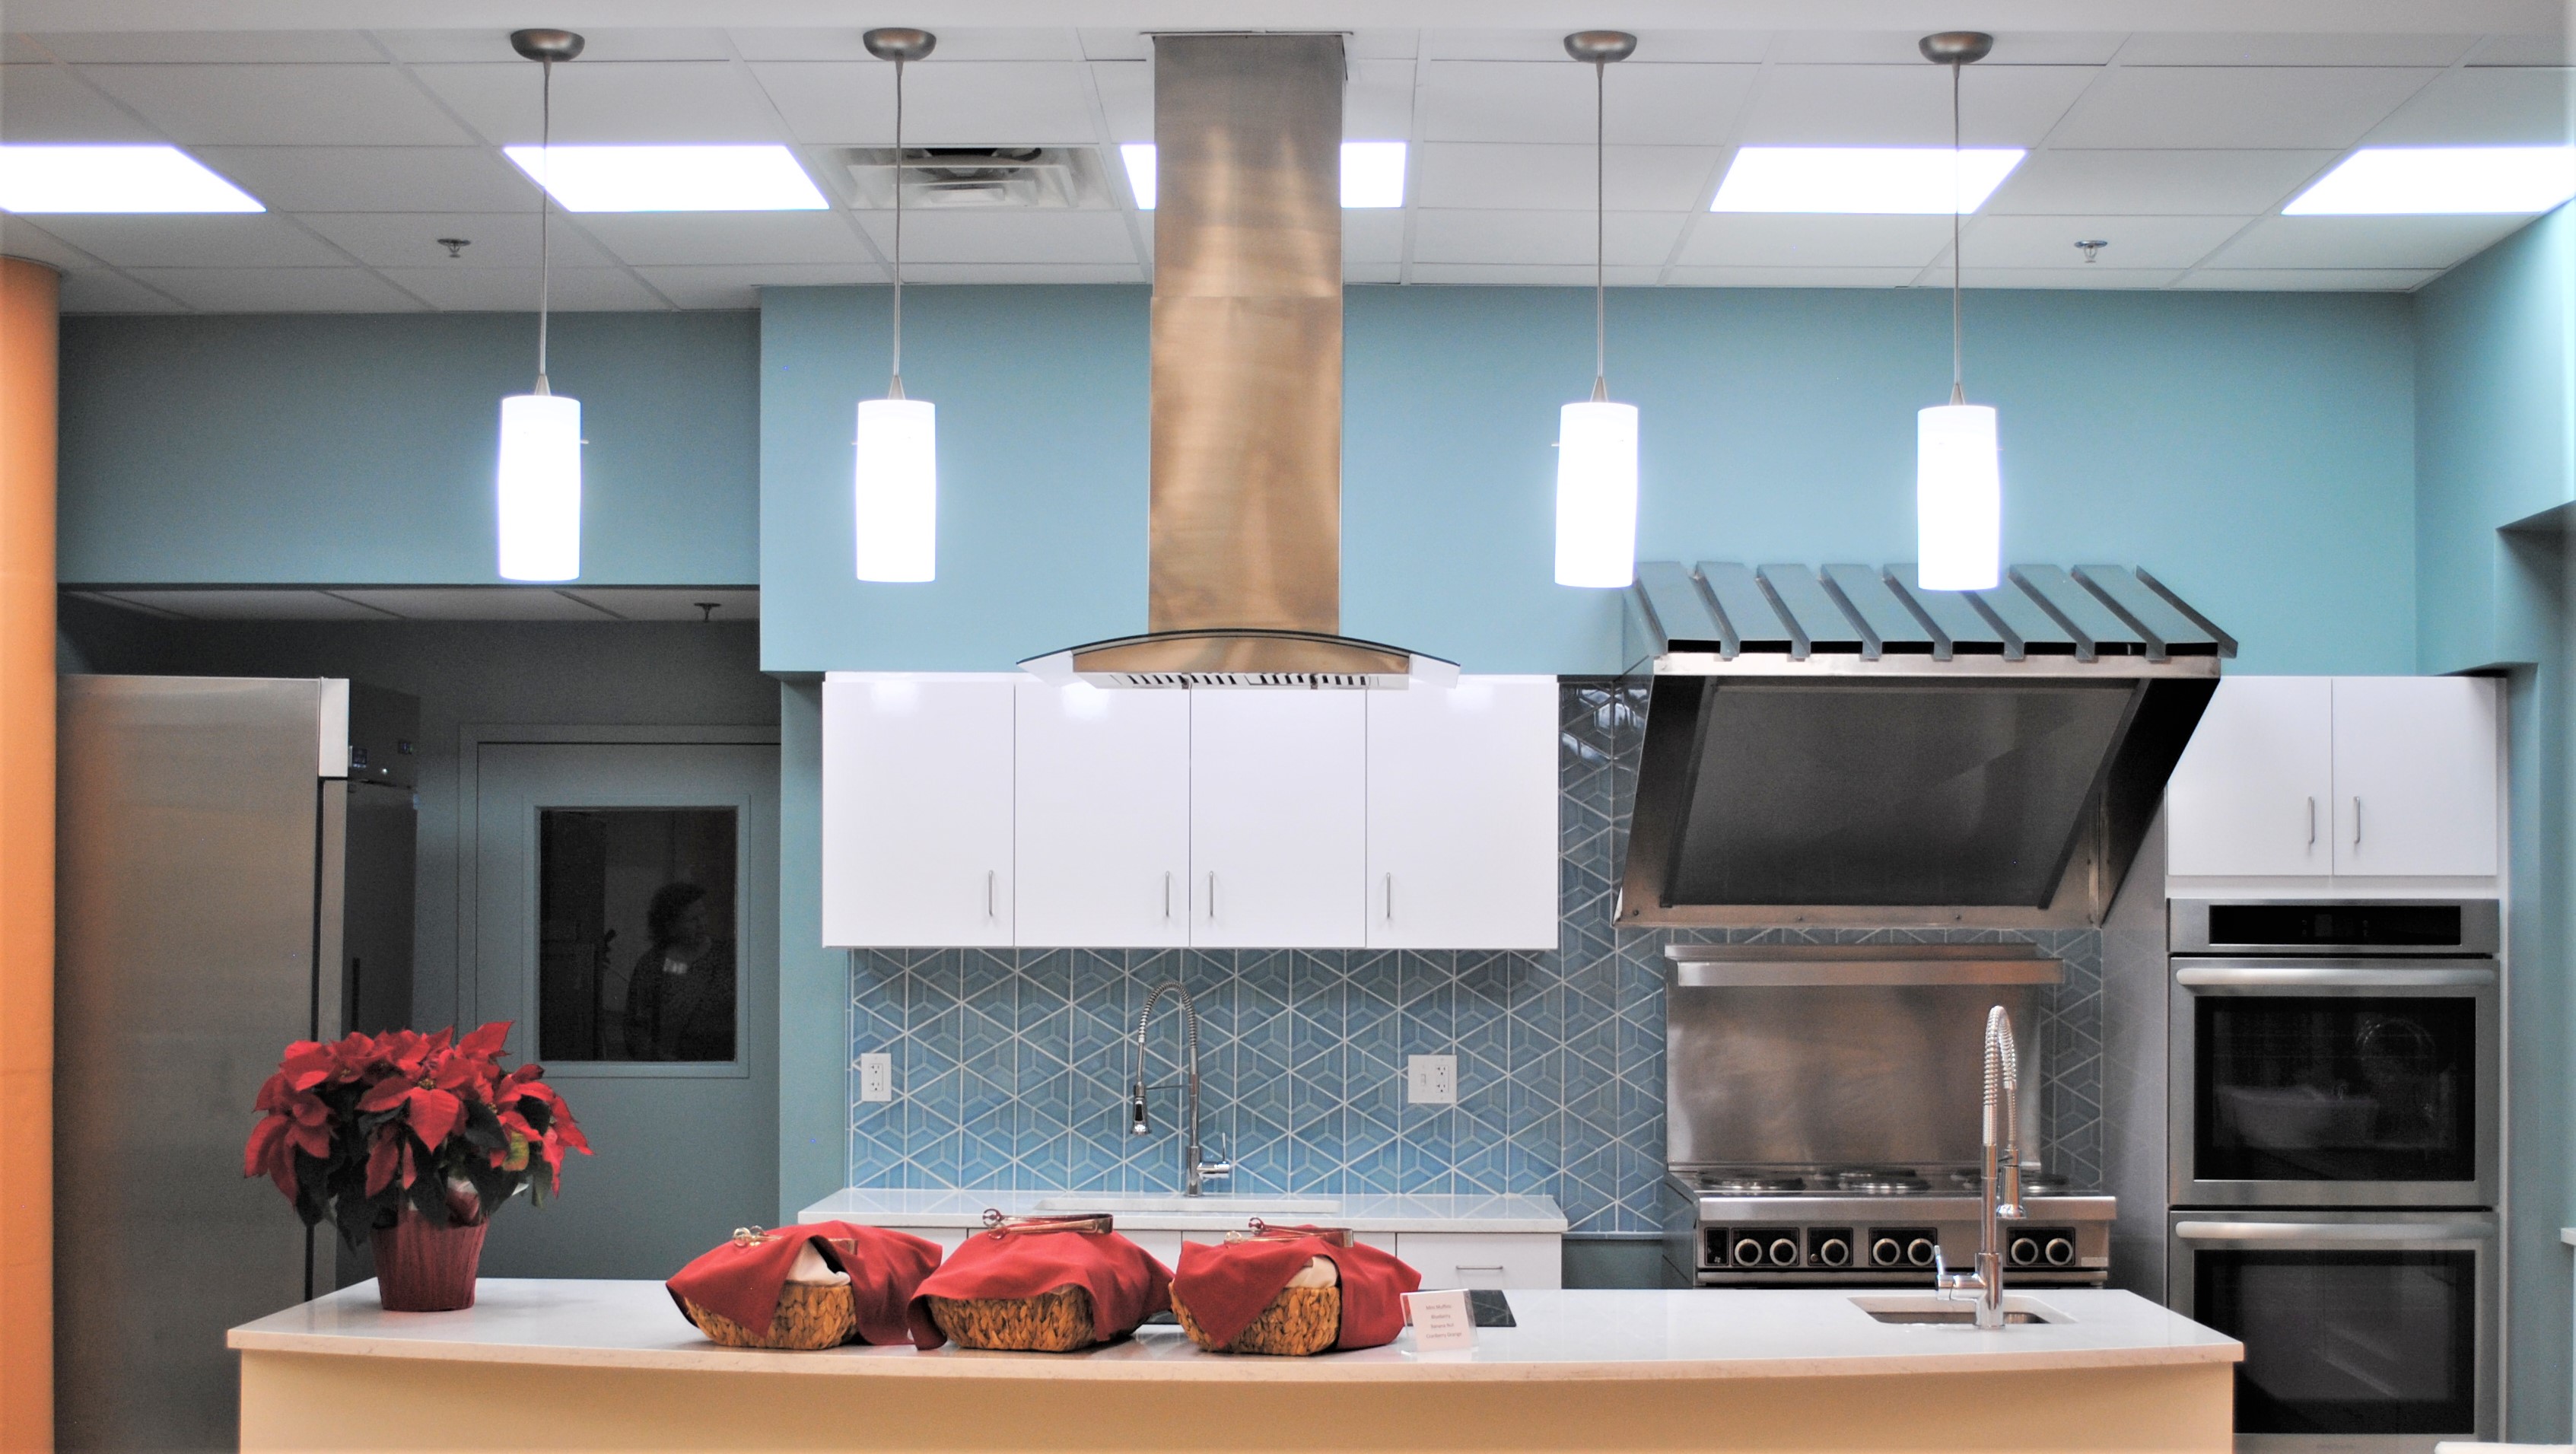 Phoenix Food Hub teaching kitchen